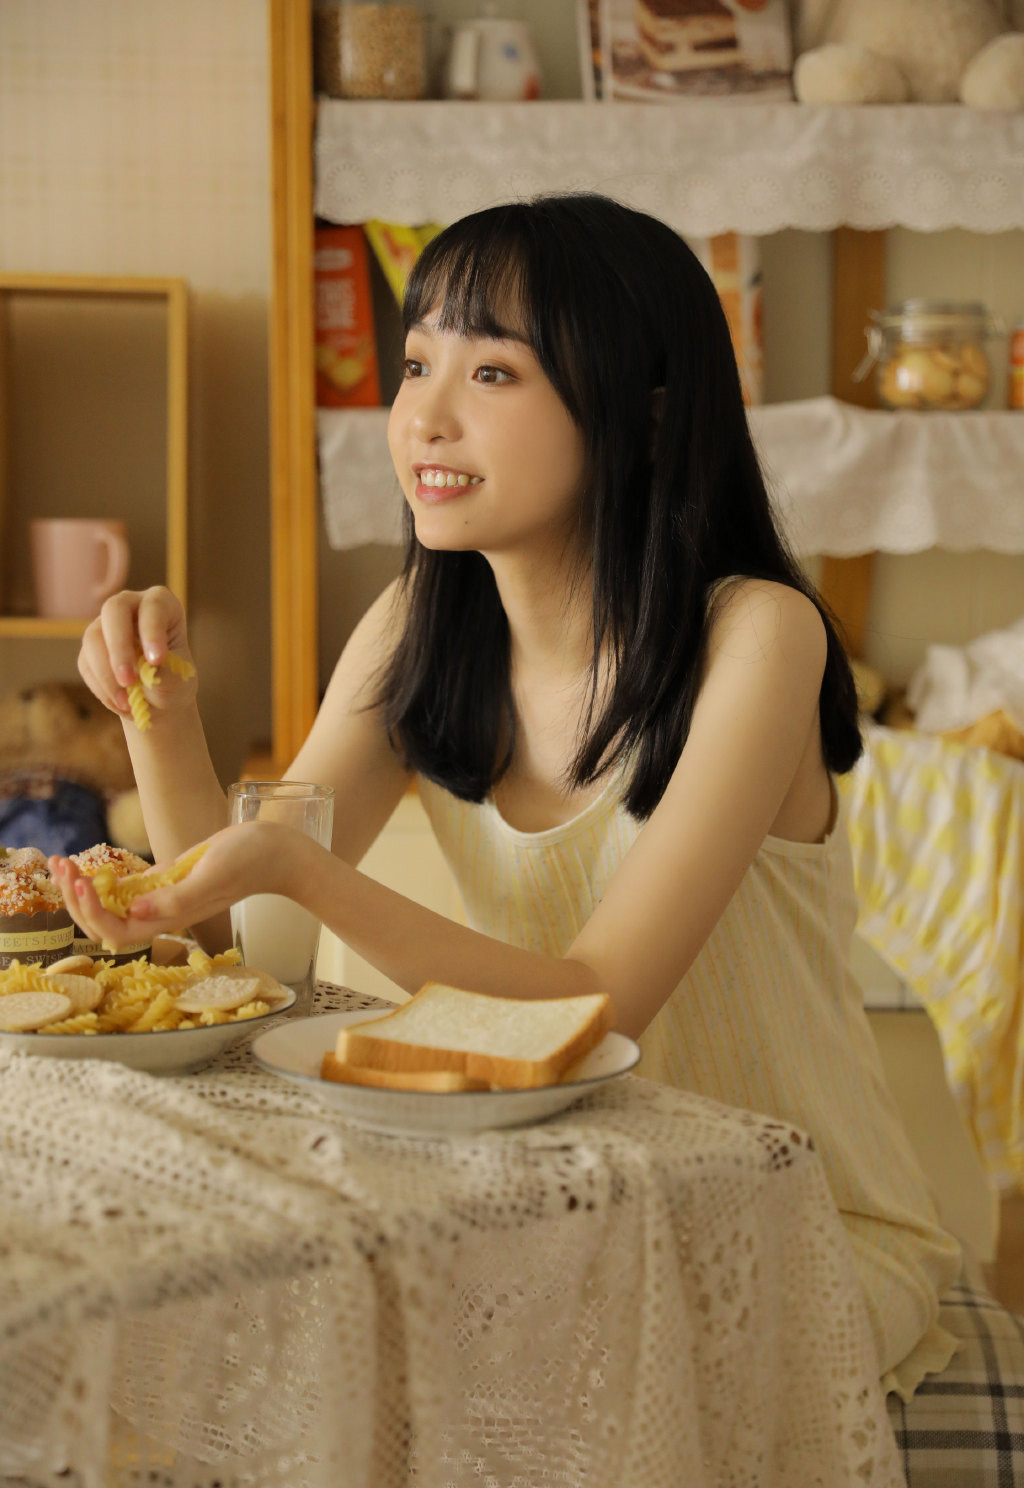 柠檬酱 | 绅士福利站 早餐女孩日系居家唯美性感美女写真 唯美写真  